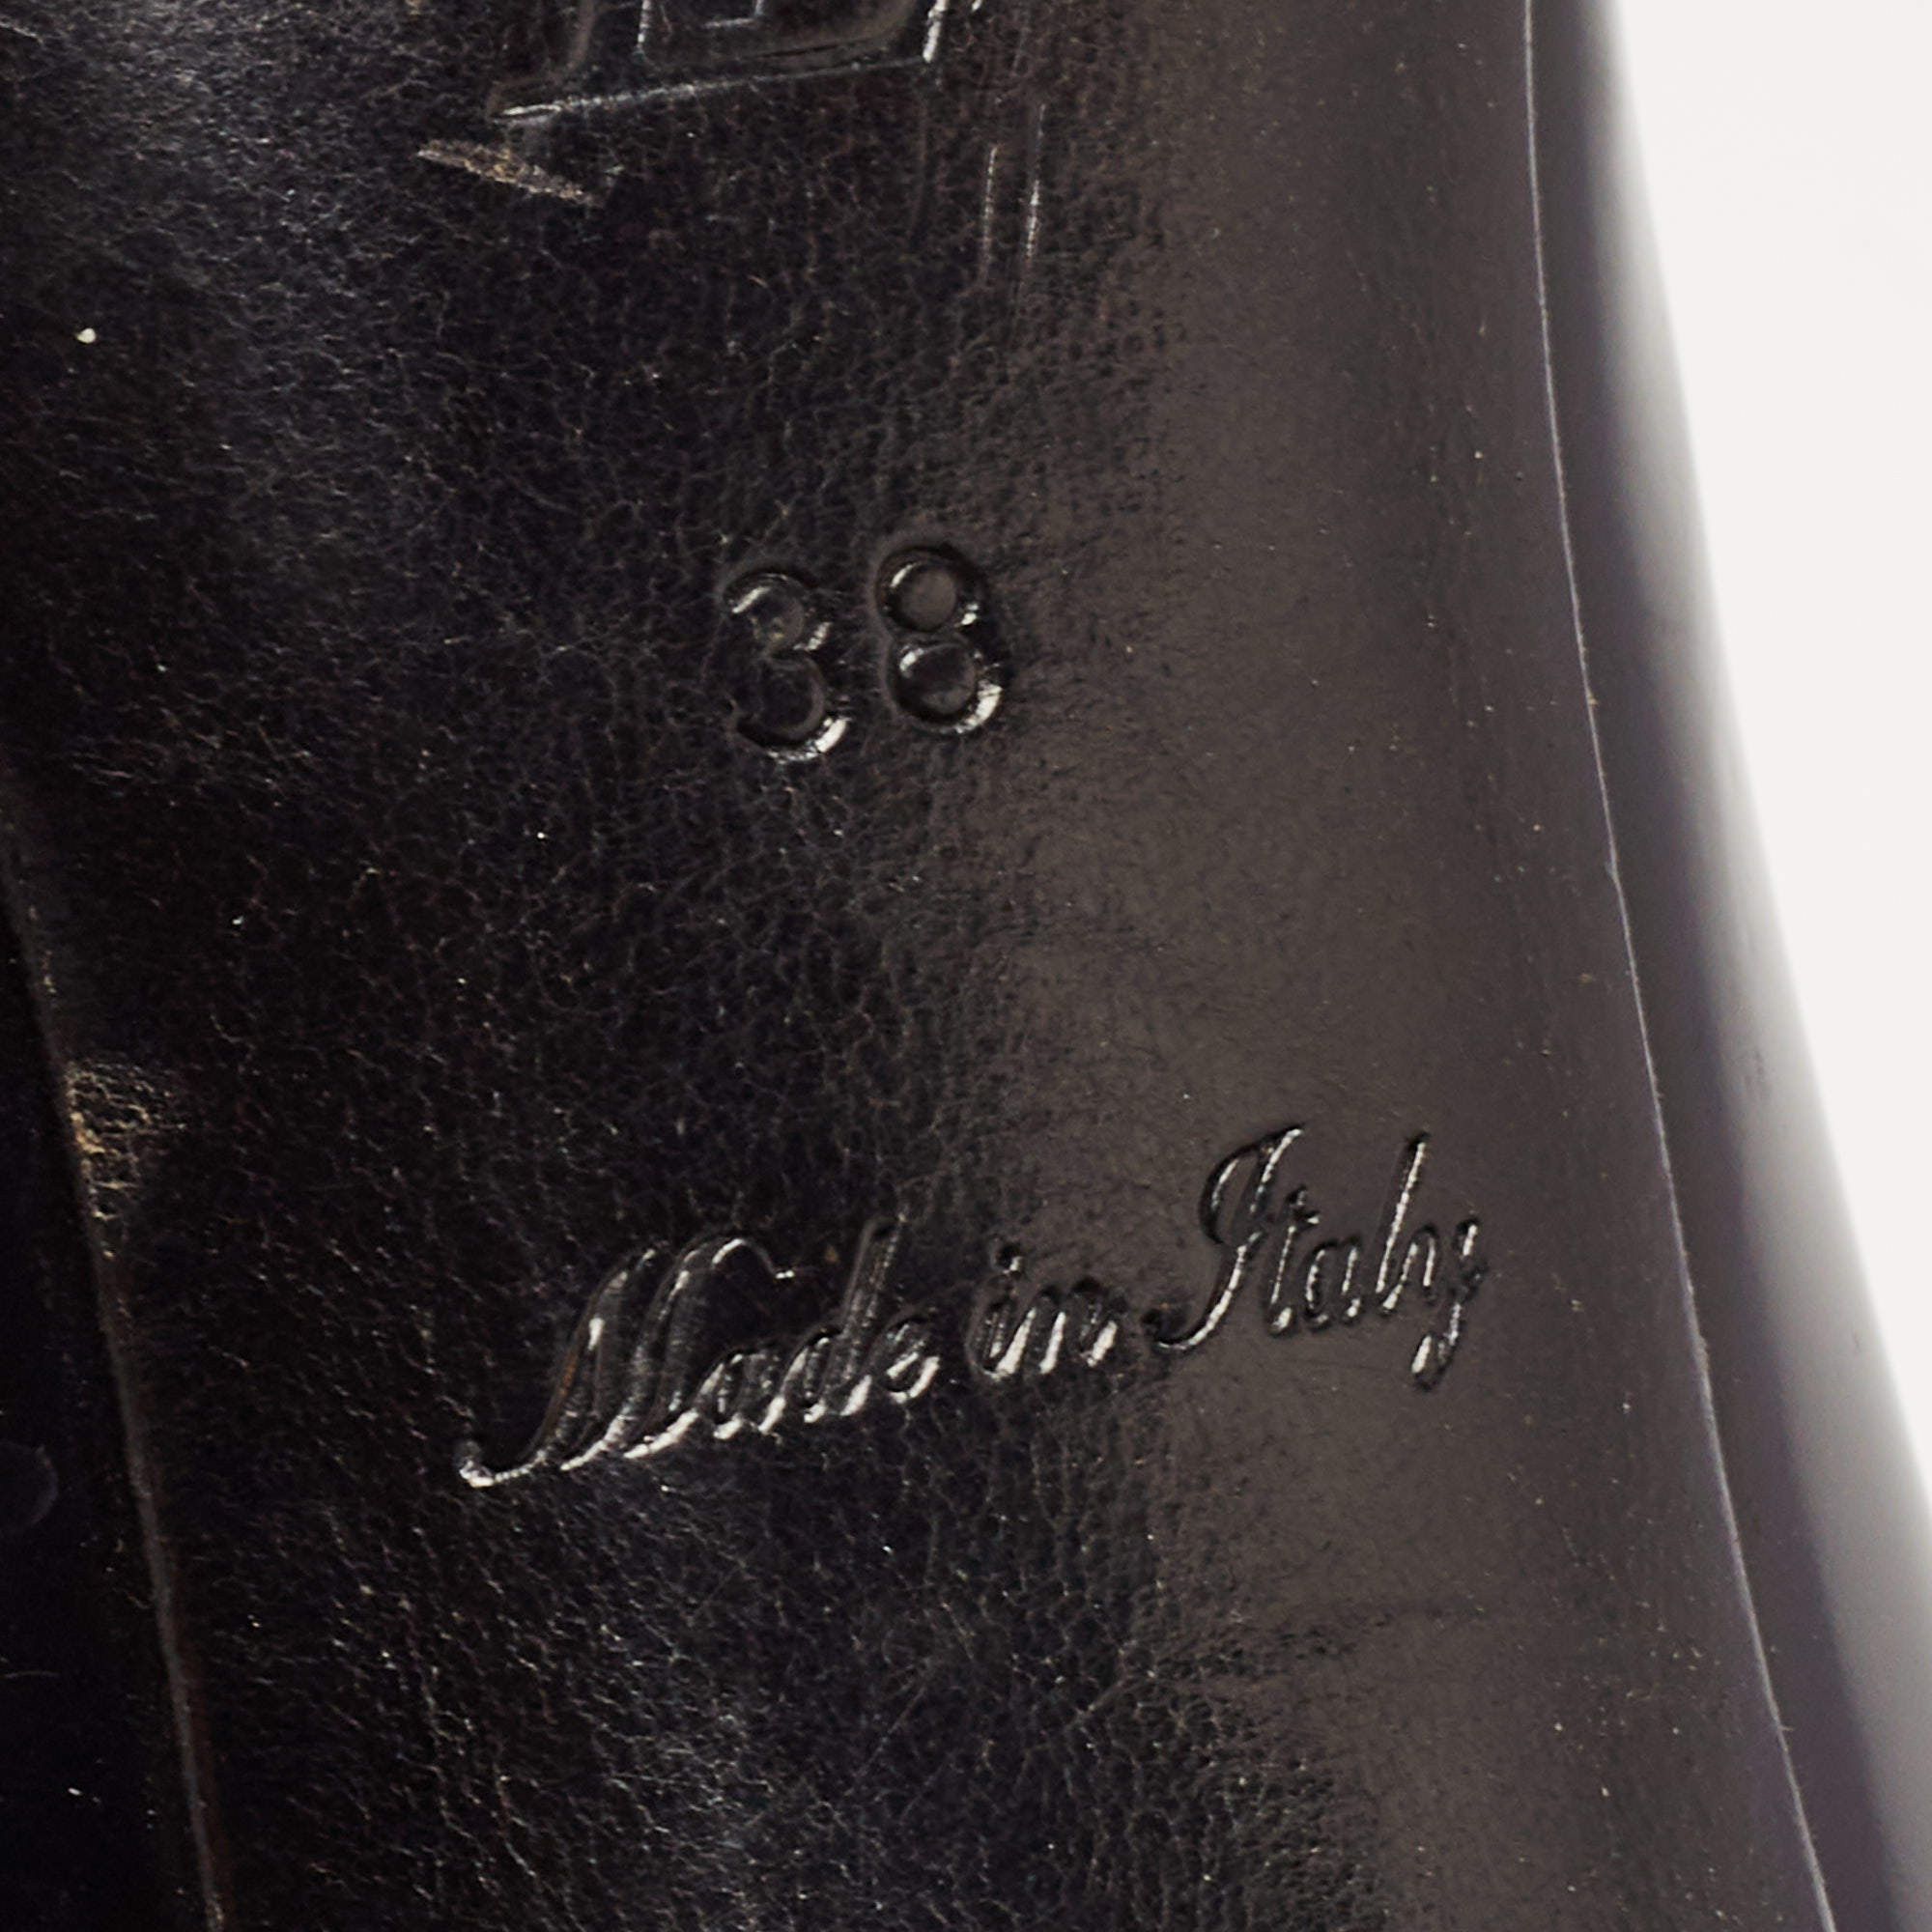 Louis Vuitton Black Leather Eyeline Pumps Size 38 Louis Vuitton